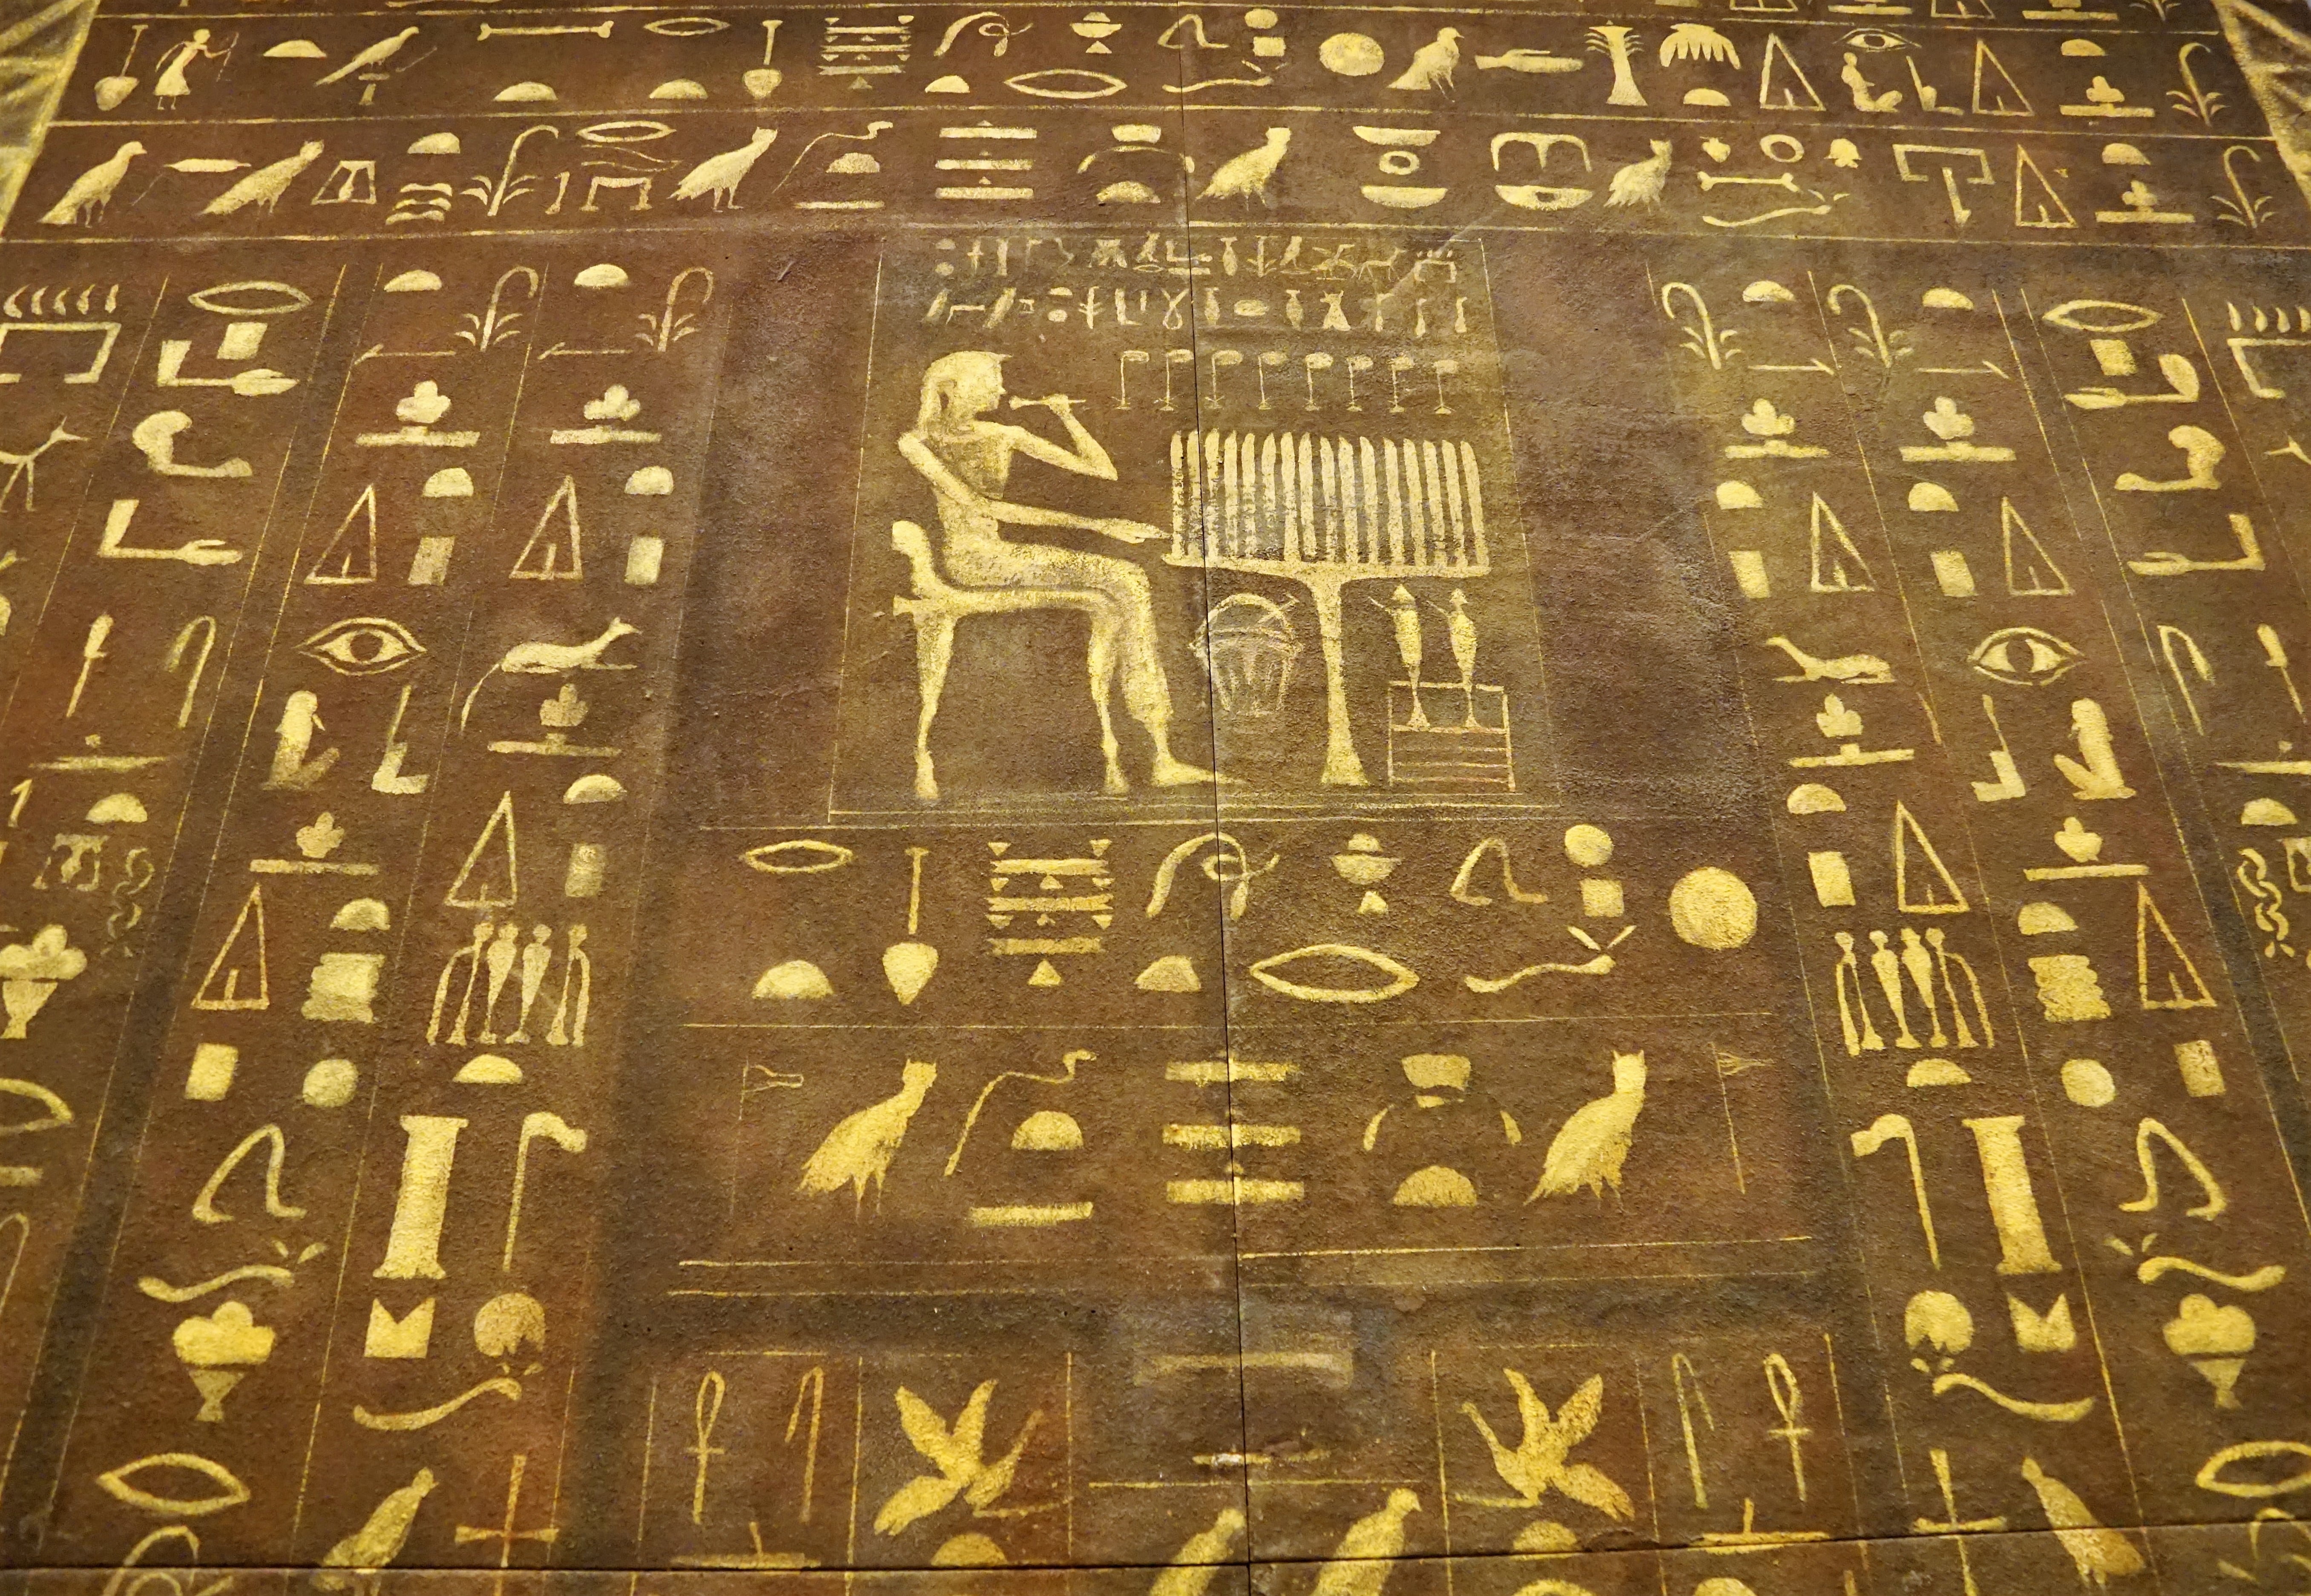 Фараон на букву т. Иероглифическая письменность древнего Египта. Древнейшие иероглифические надписи Египта. Письмена Египет пирамиды. Письмена древних египтян фараон.